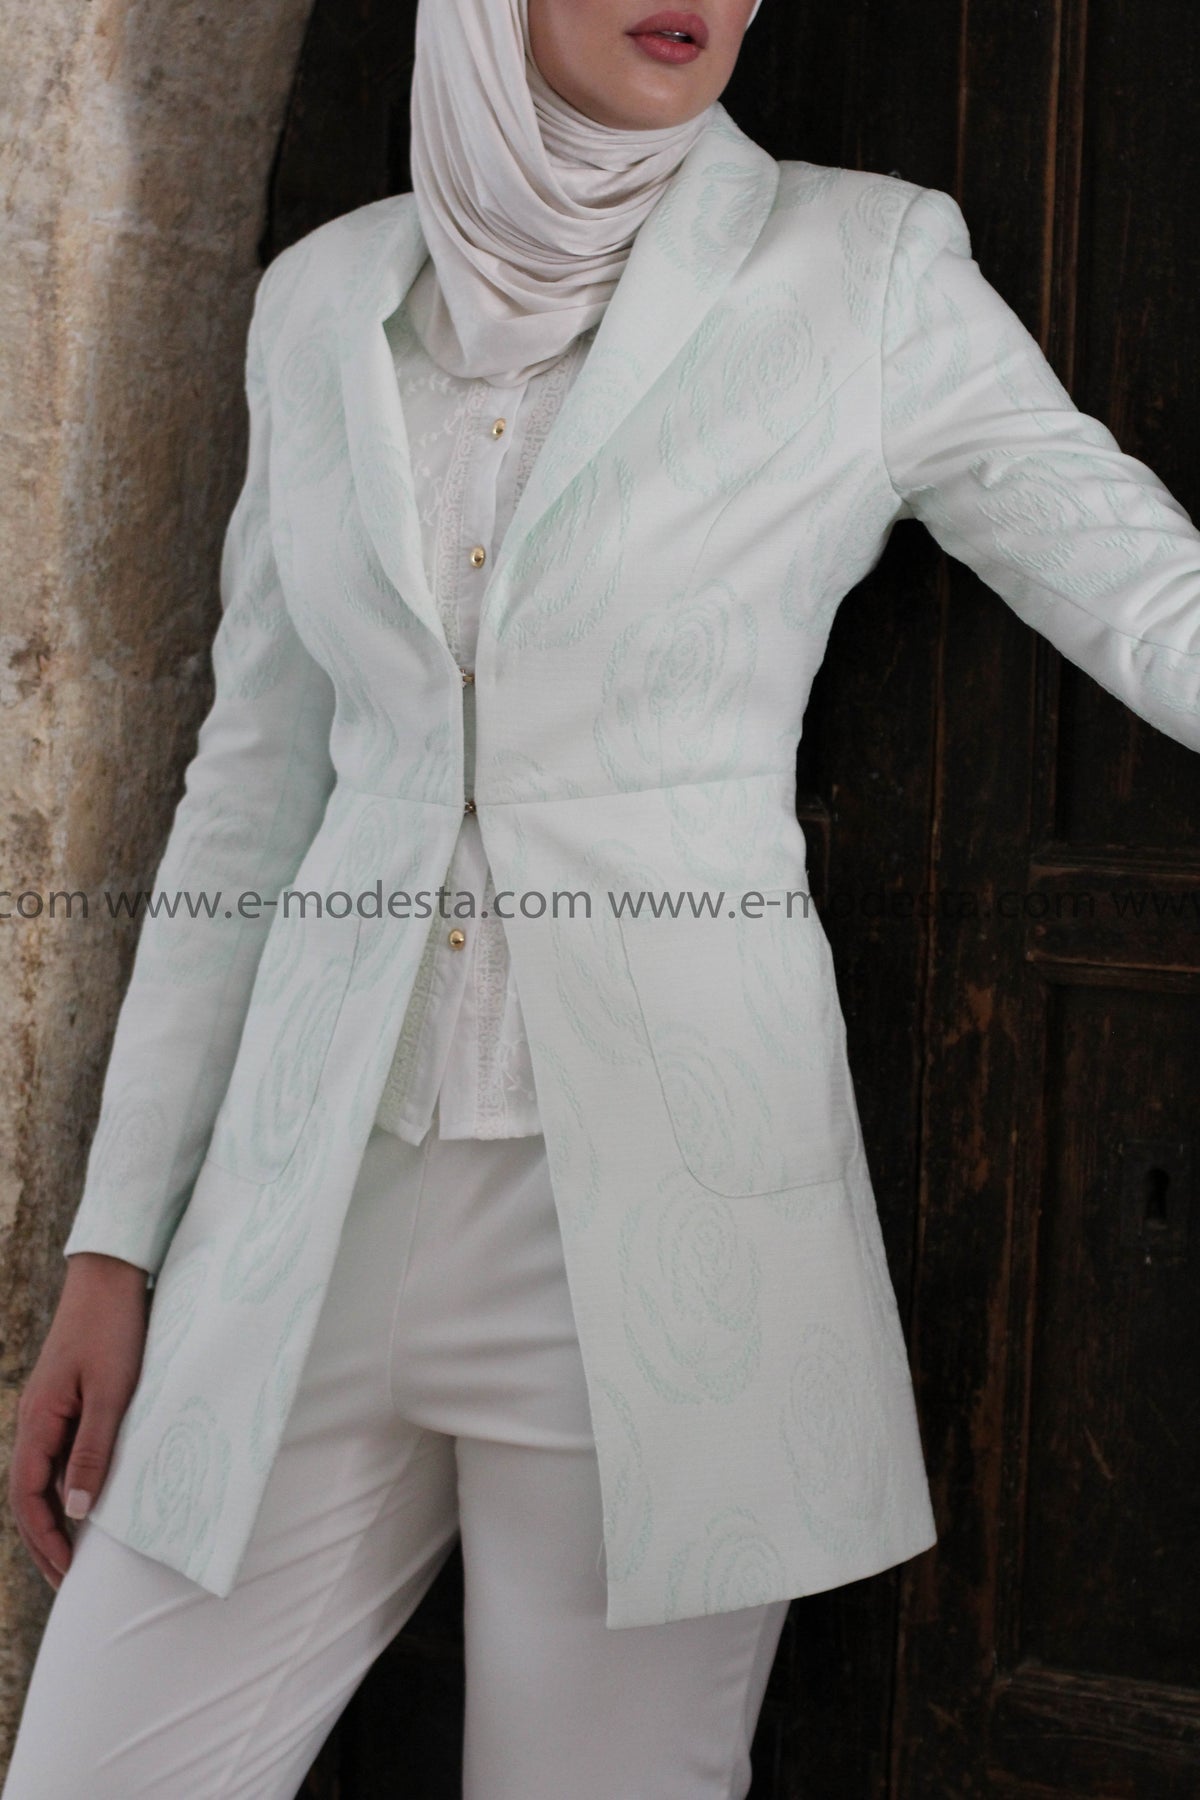 Light Lime Green Blazer & White Pants Formal Look - E-Modesta